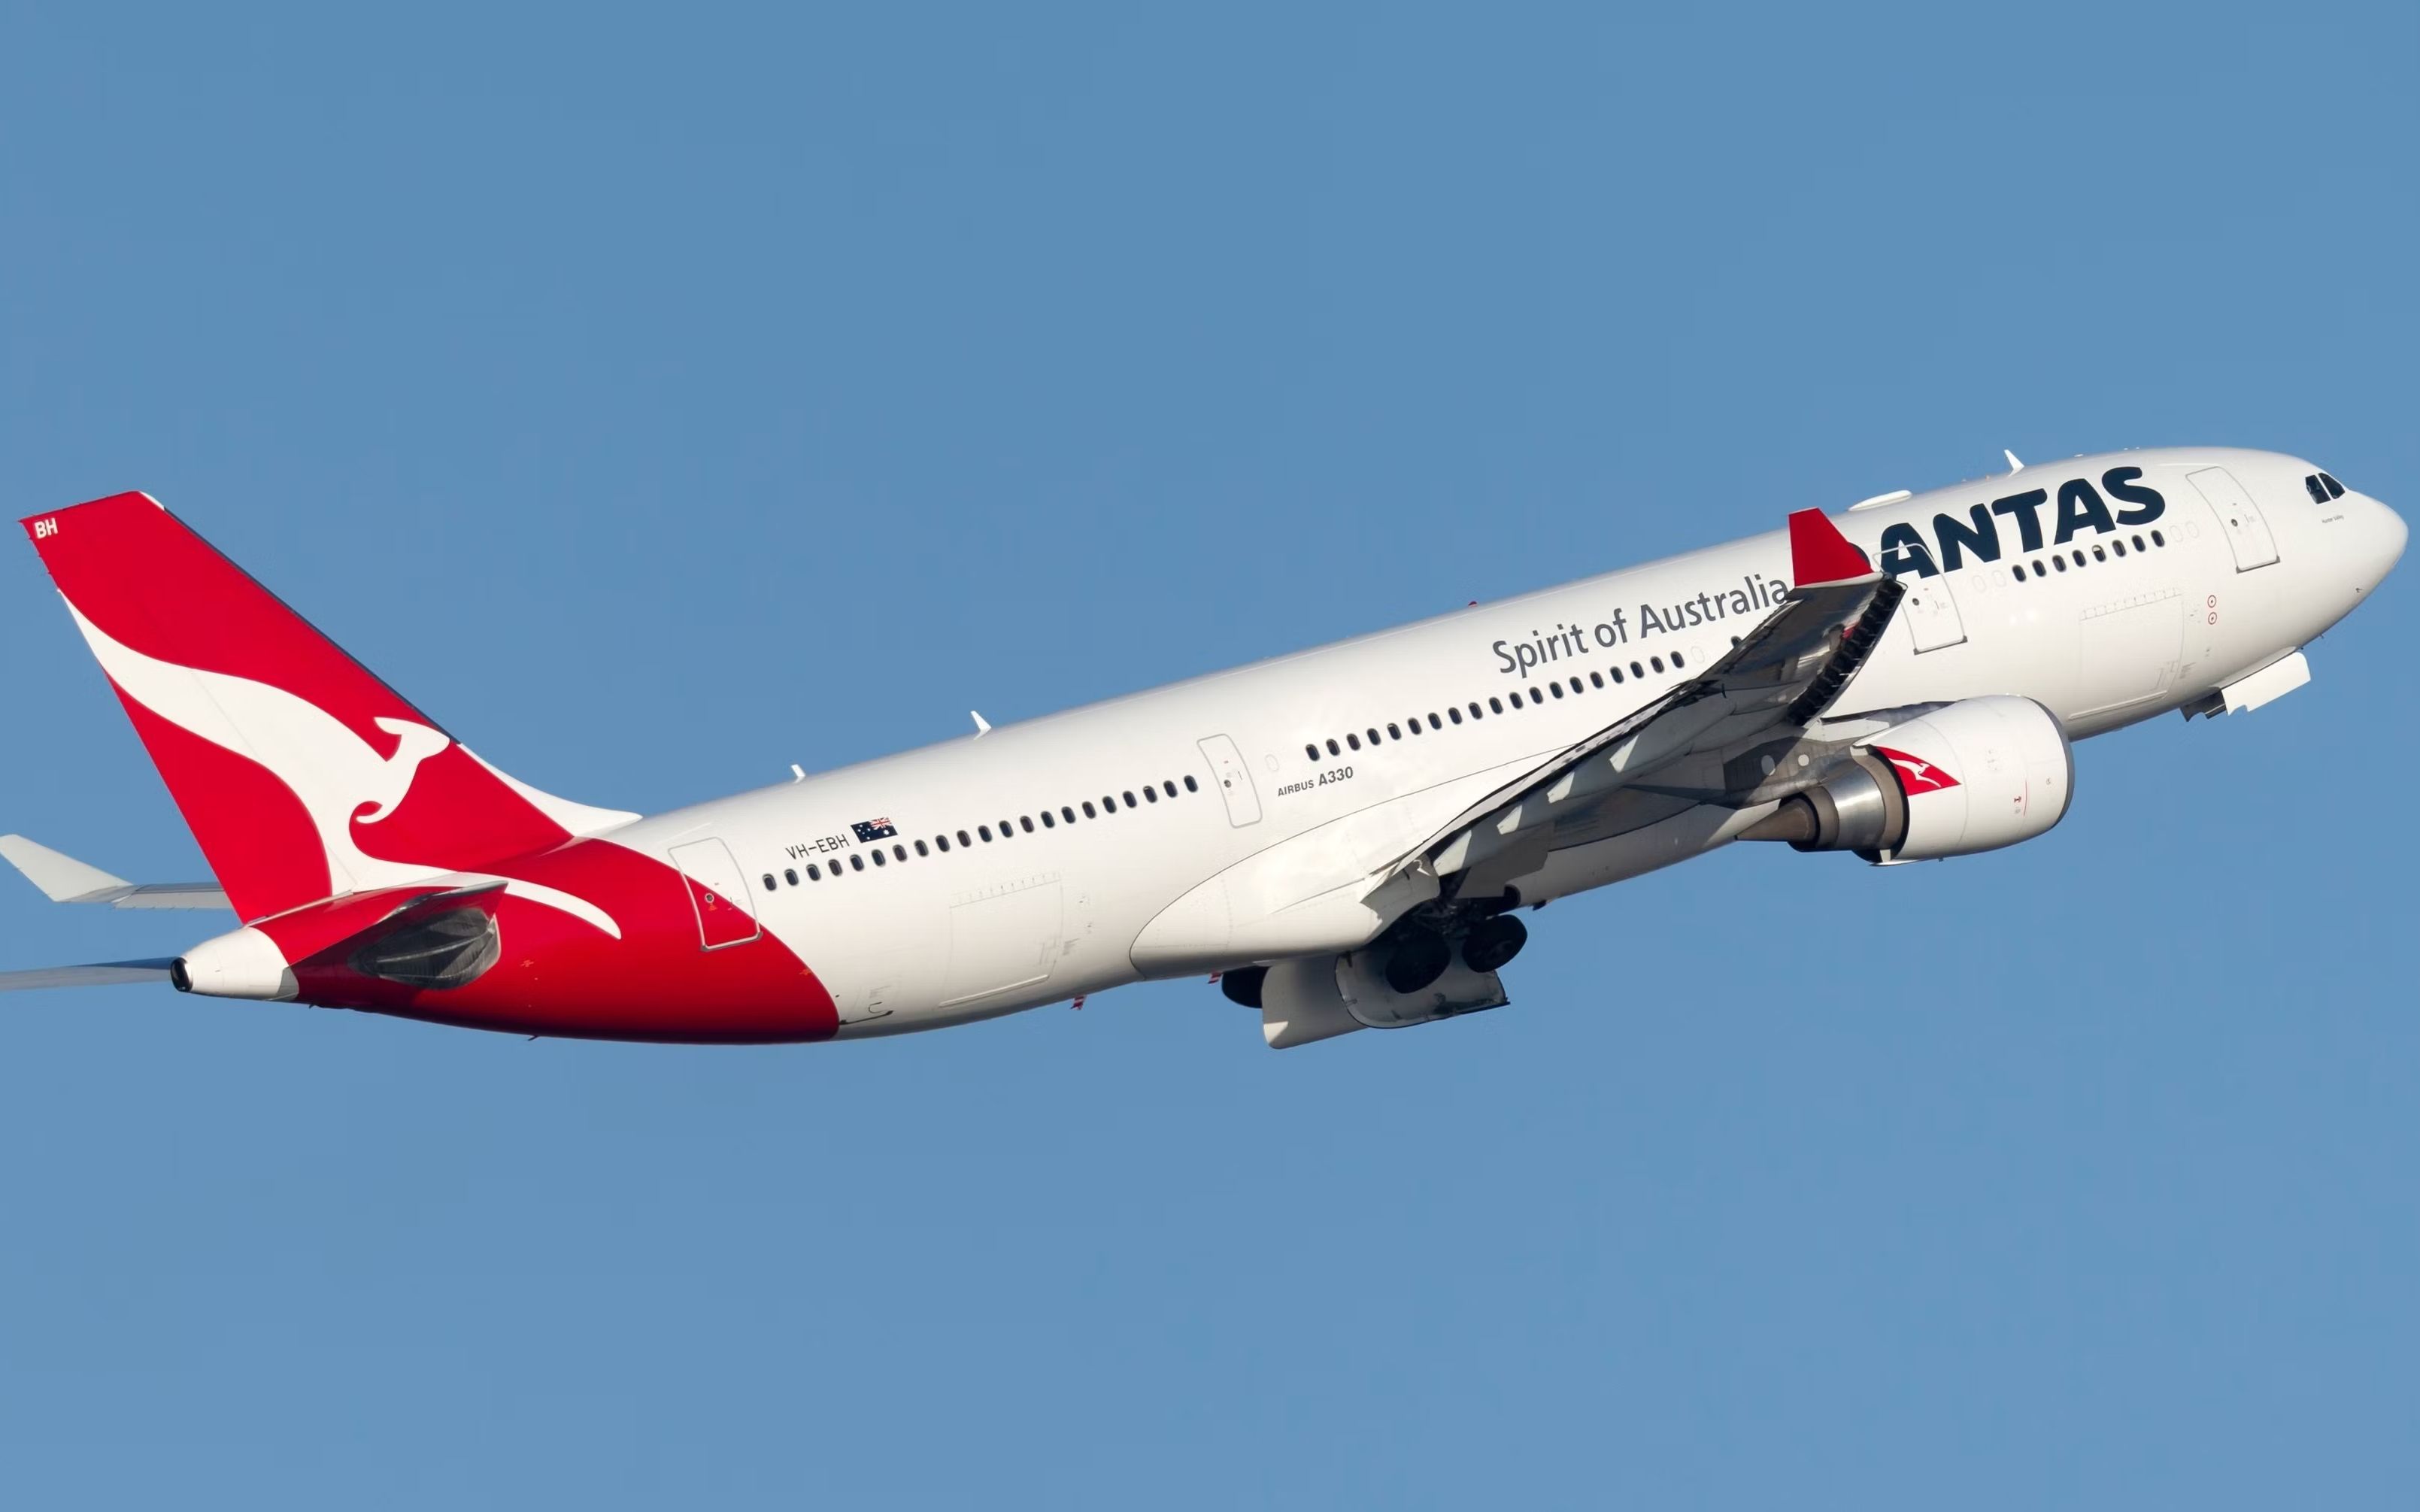 Qantas A330-200 taking off